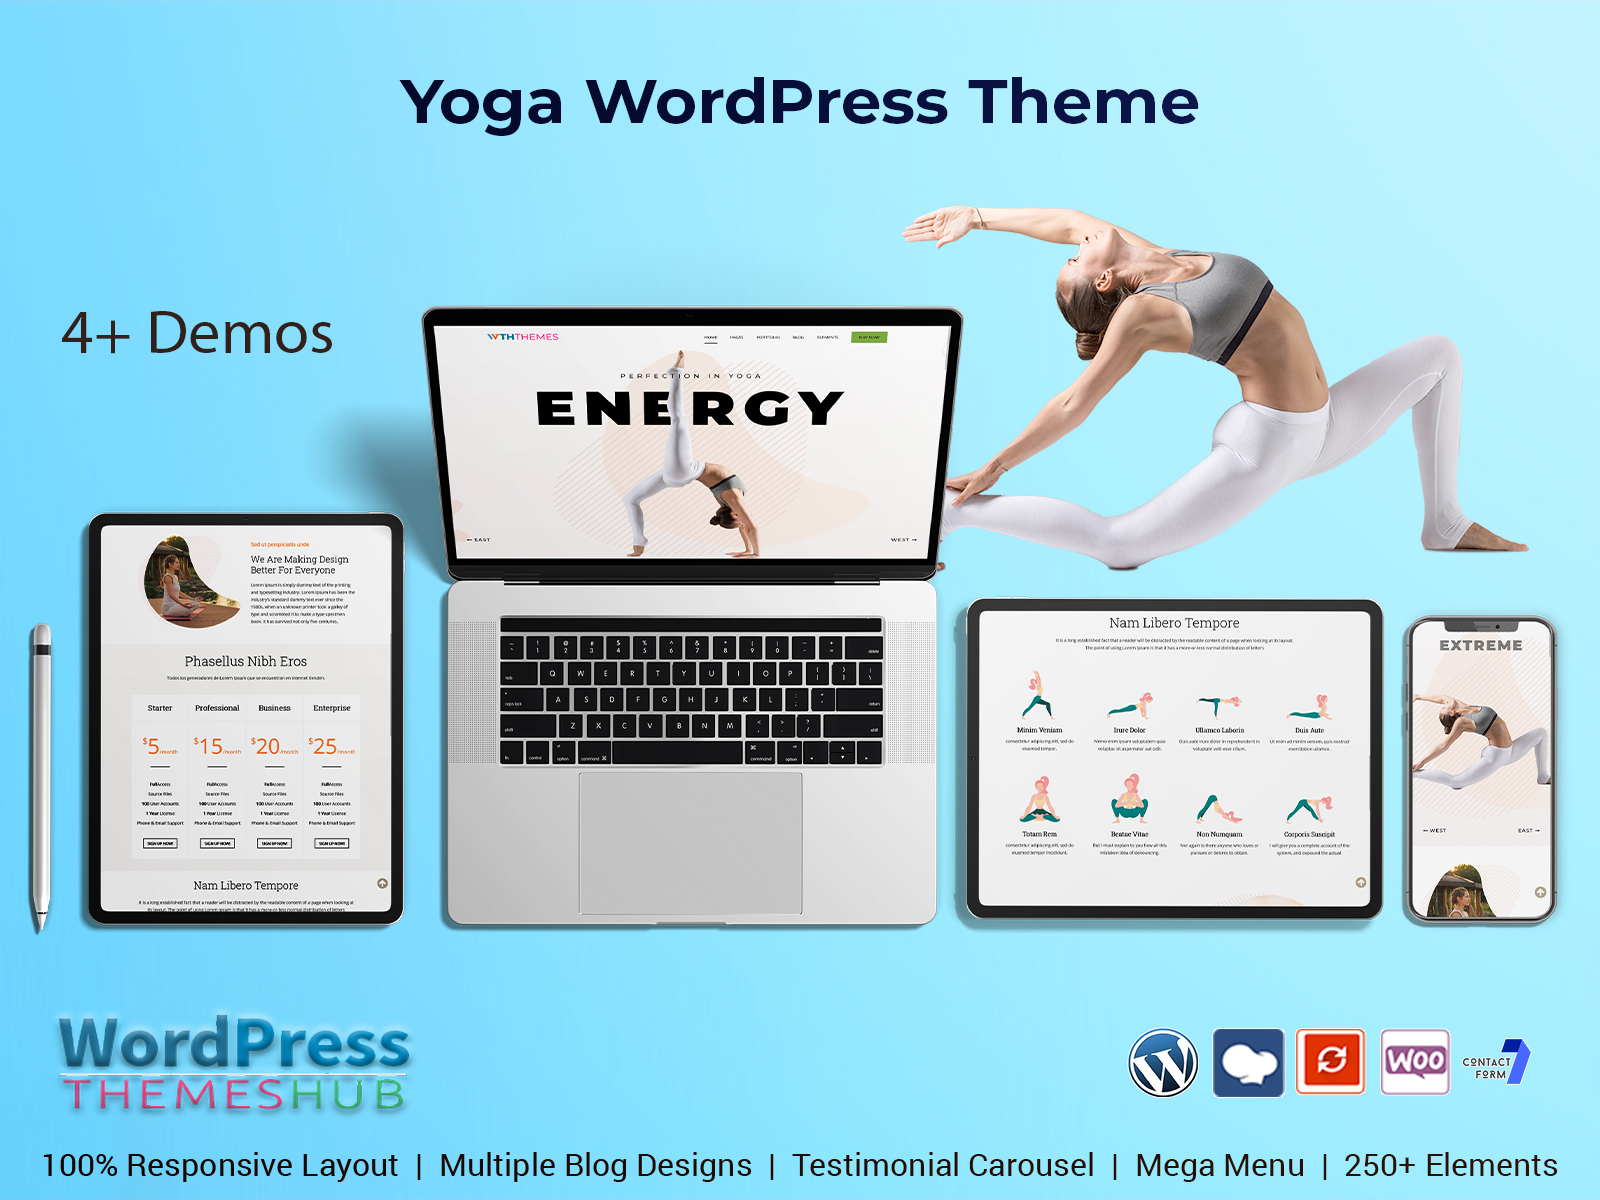 Best Yoga WordPress Theme For A Studio, Gym, Or Yoga Blog